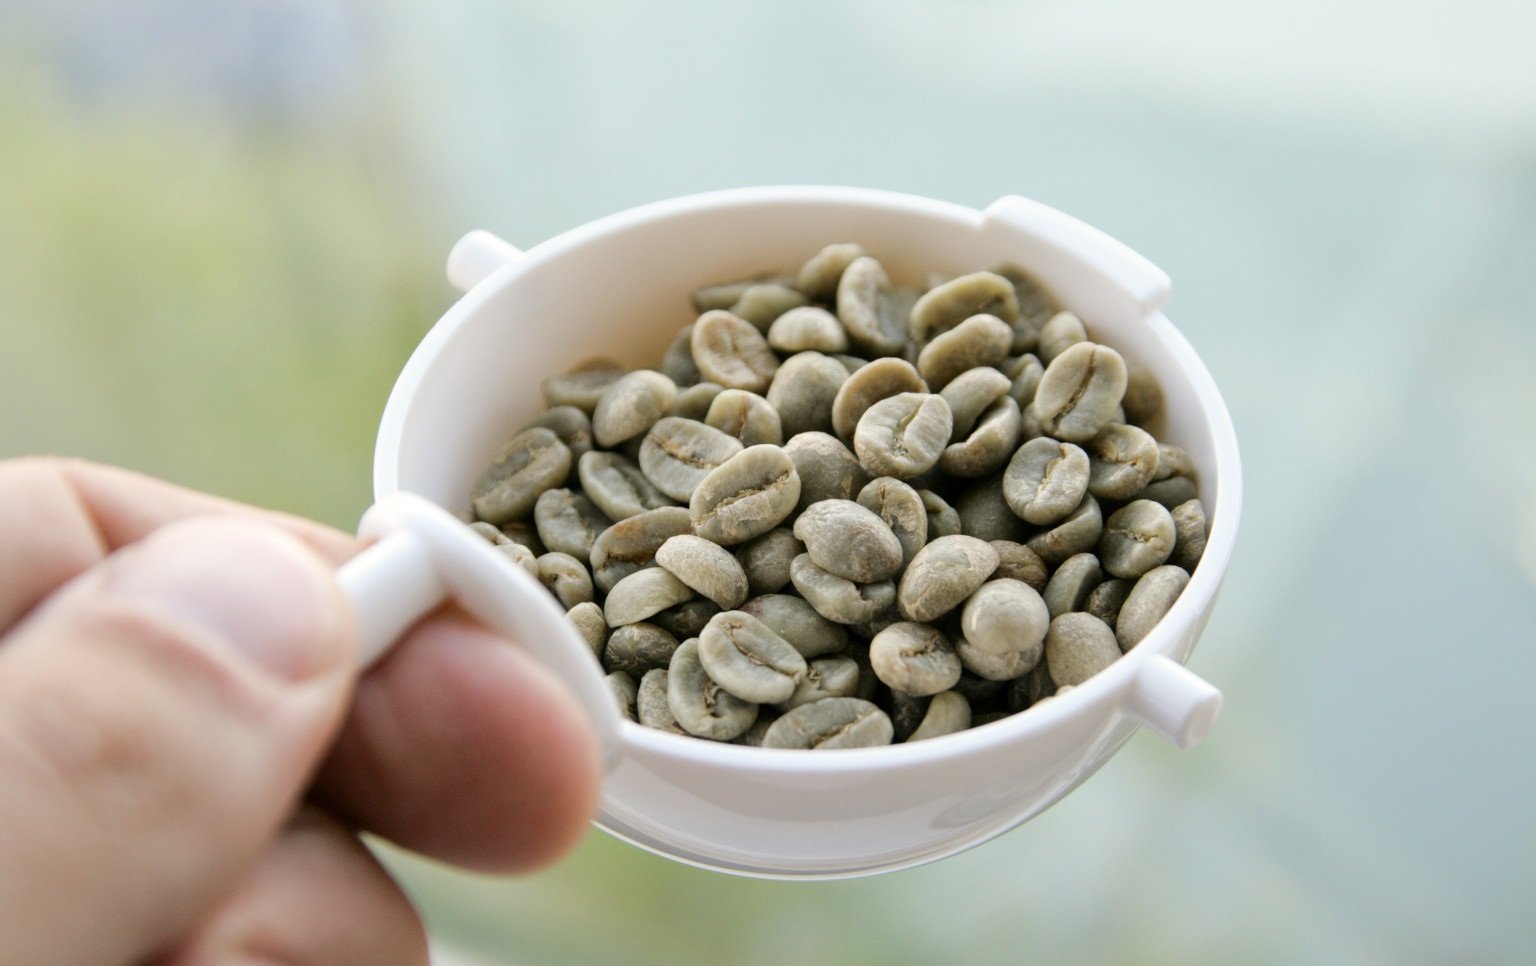 Побочные действия к зеленому кофе для похудения